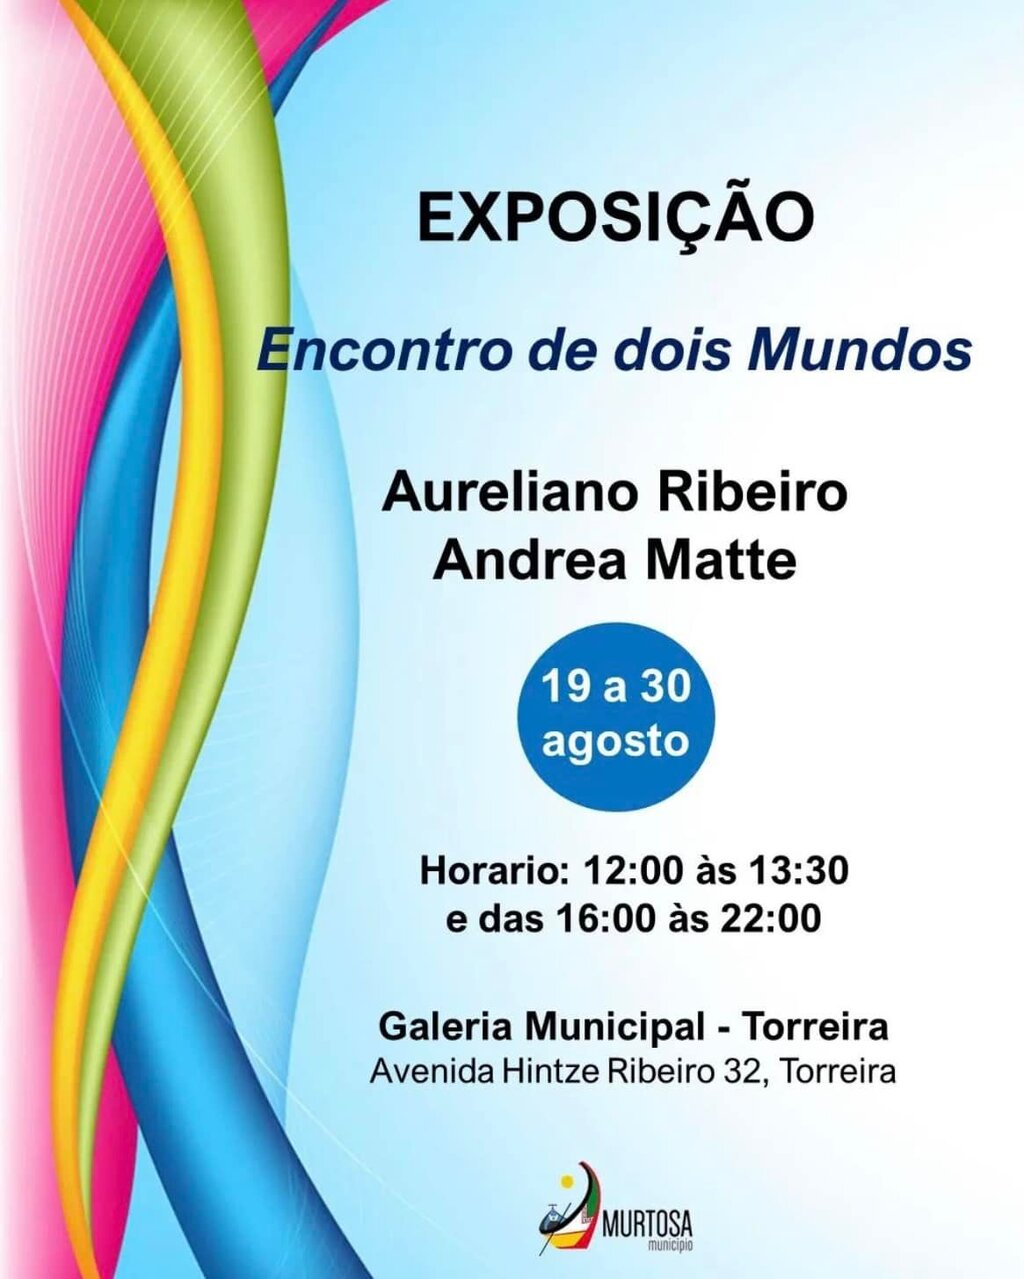 Inauguração da Exposição "Encontro de Dois Mundos" - Aureliano Ribeiro e Andrea Matte